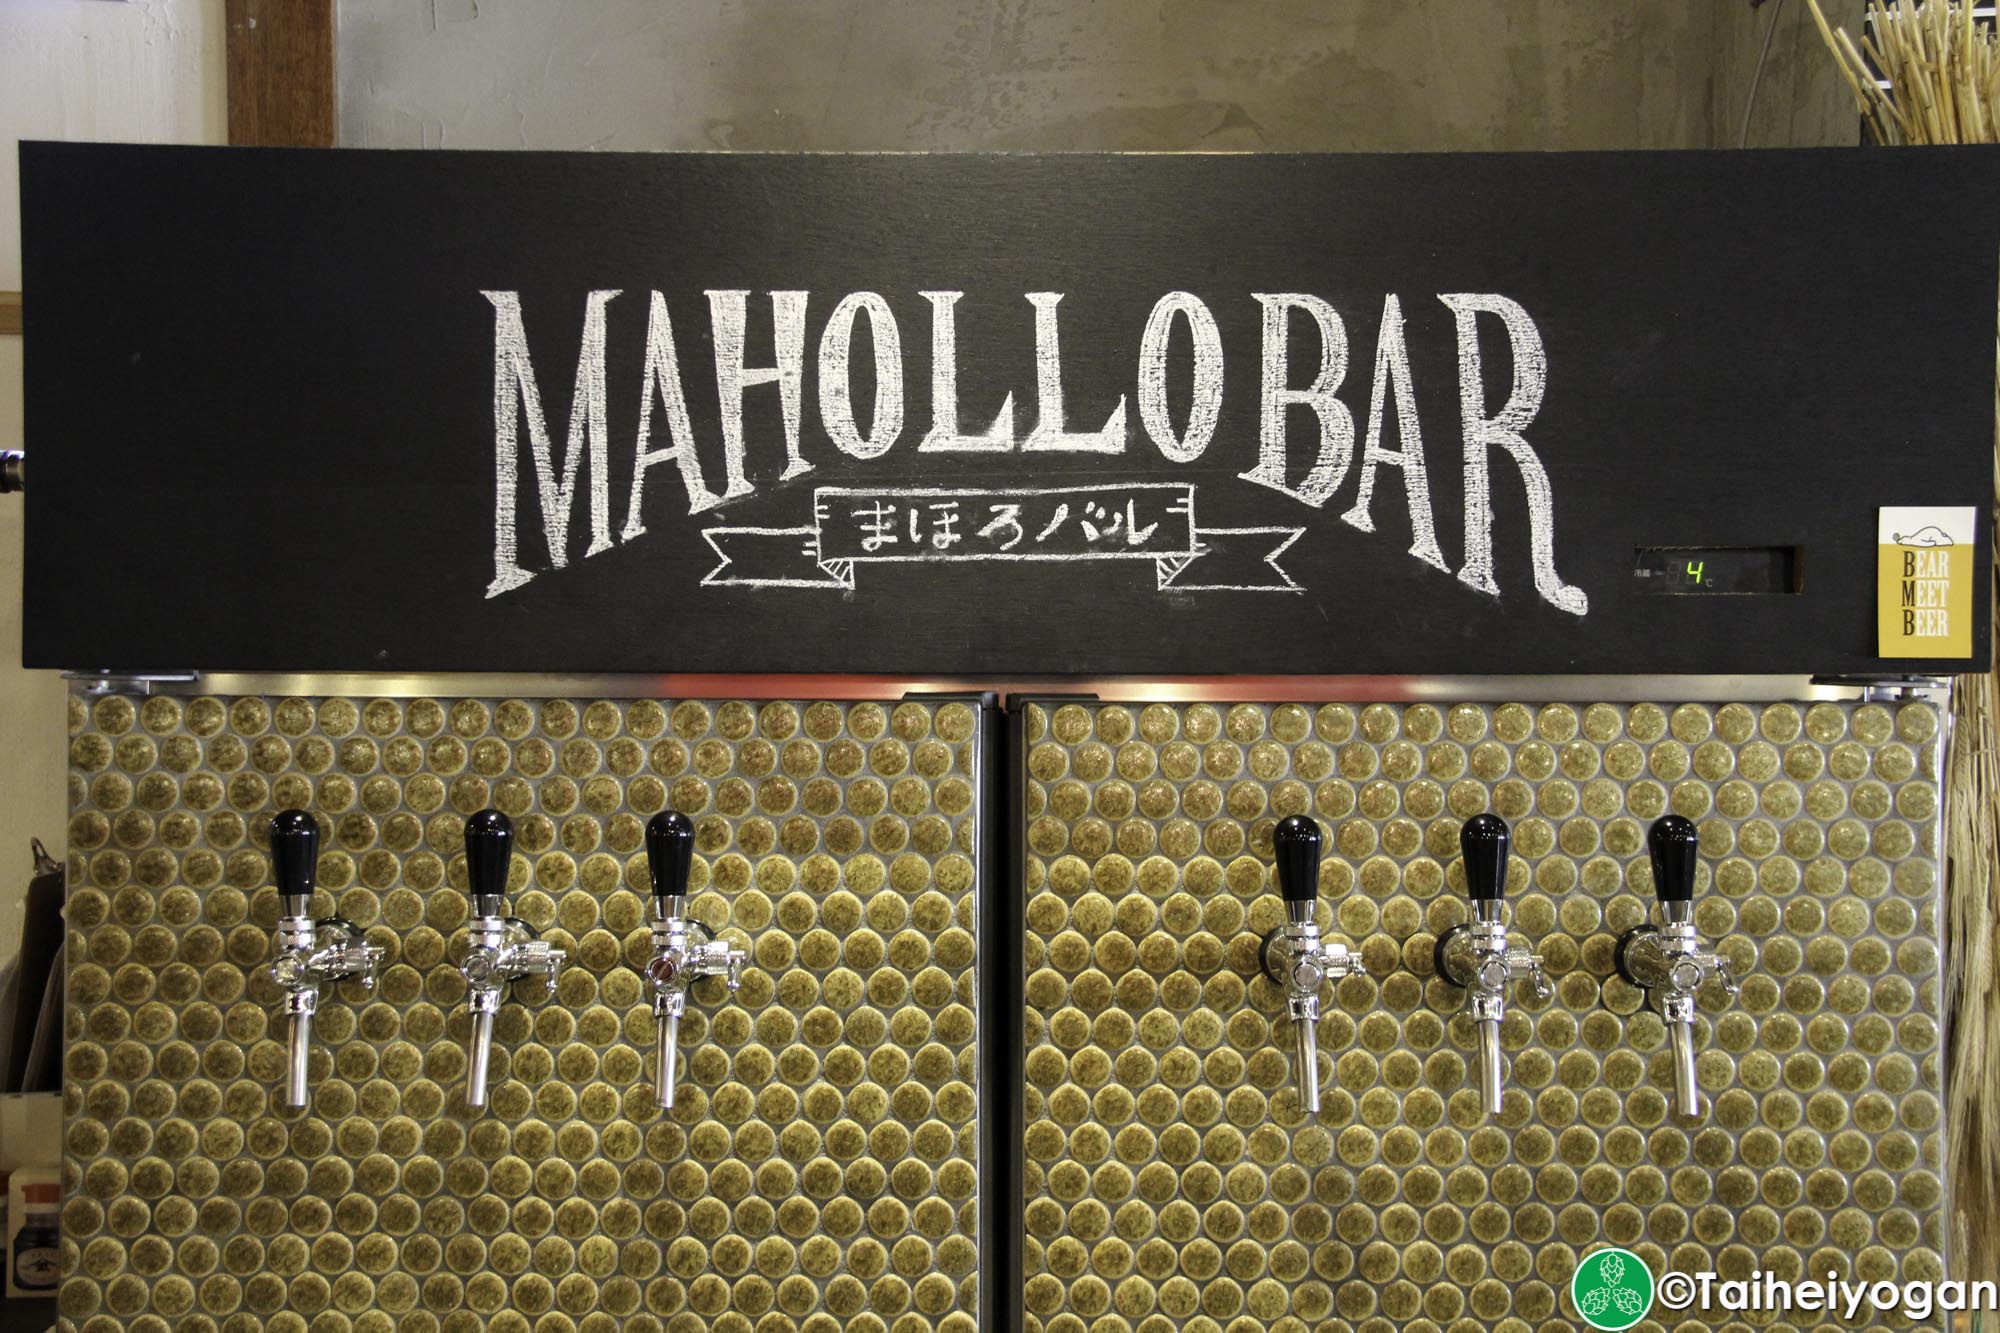 Mahollo Bar